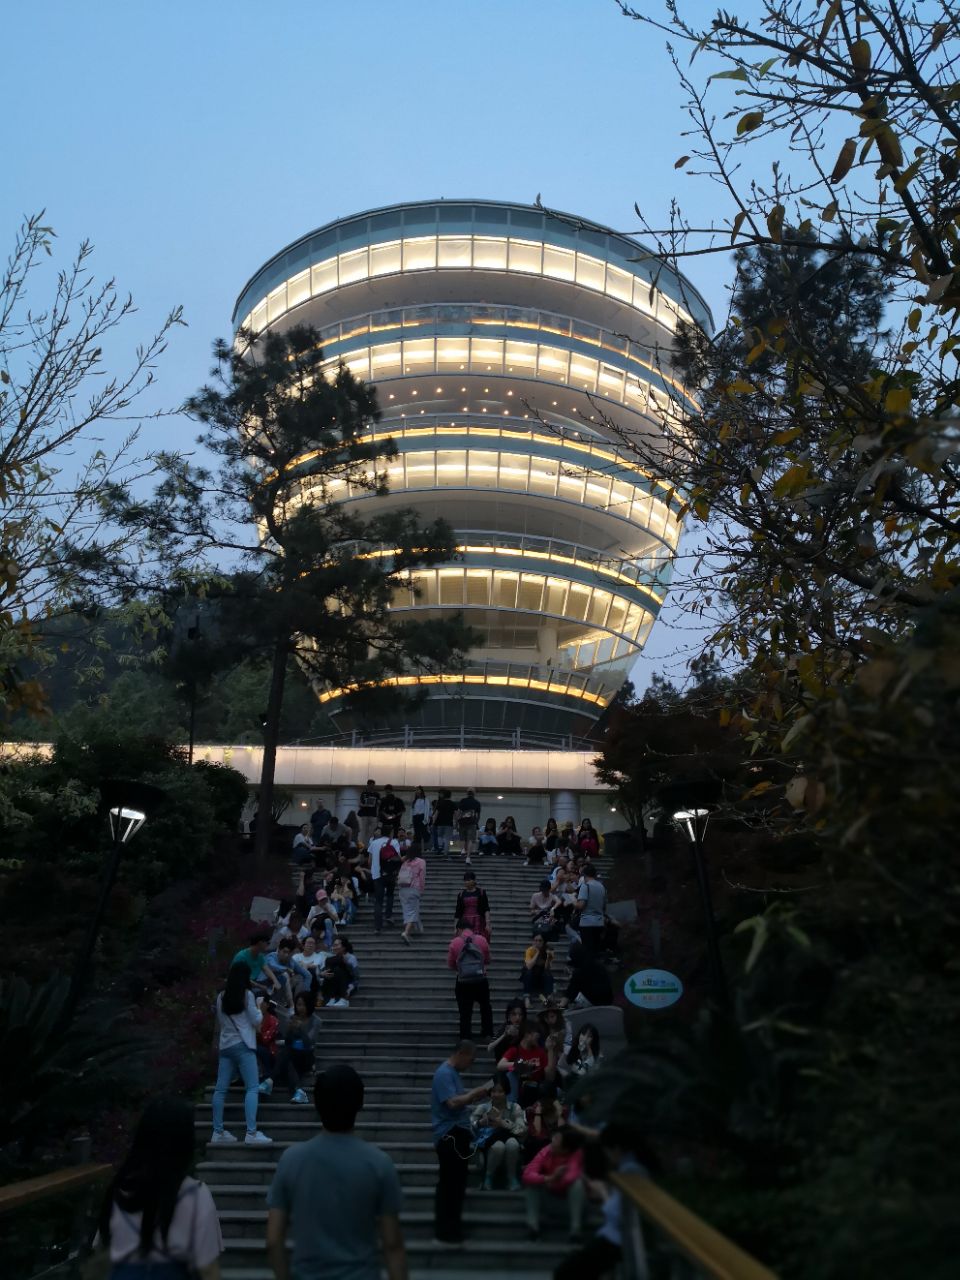 重庆南山一棵树照片图片